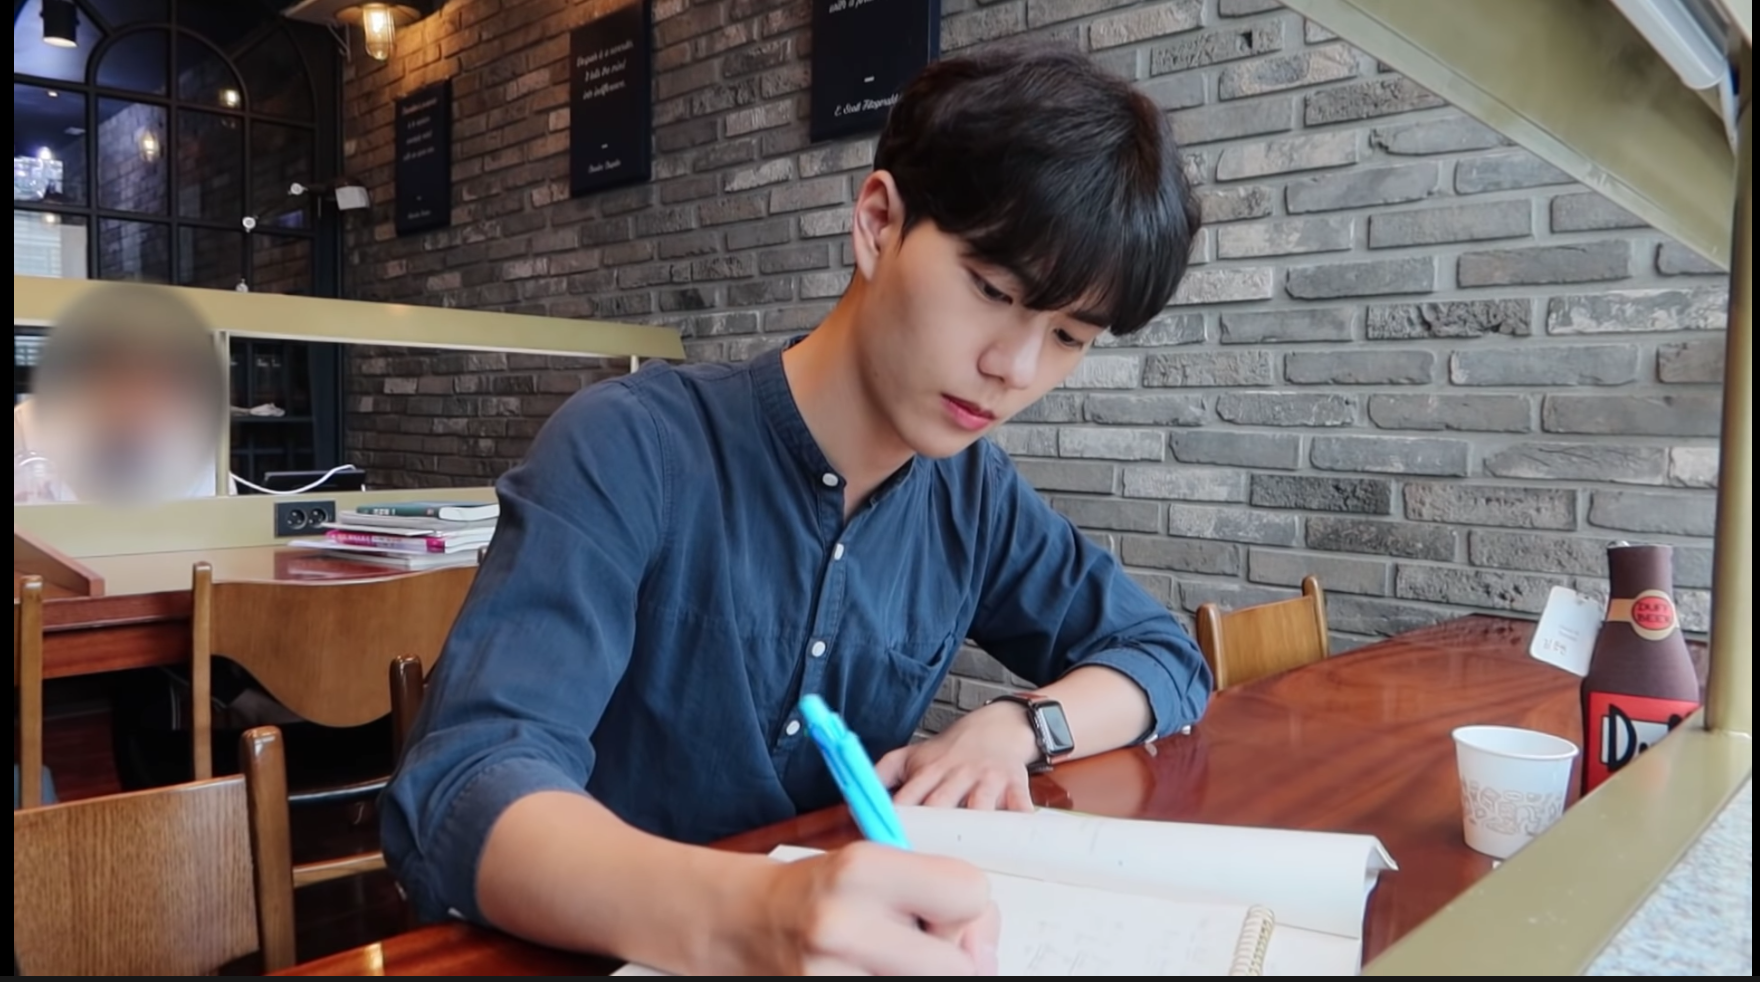 Gongbang: la tendencia de ver a otras personas estudiar durante horas